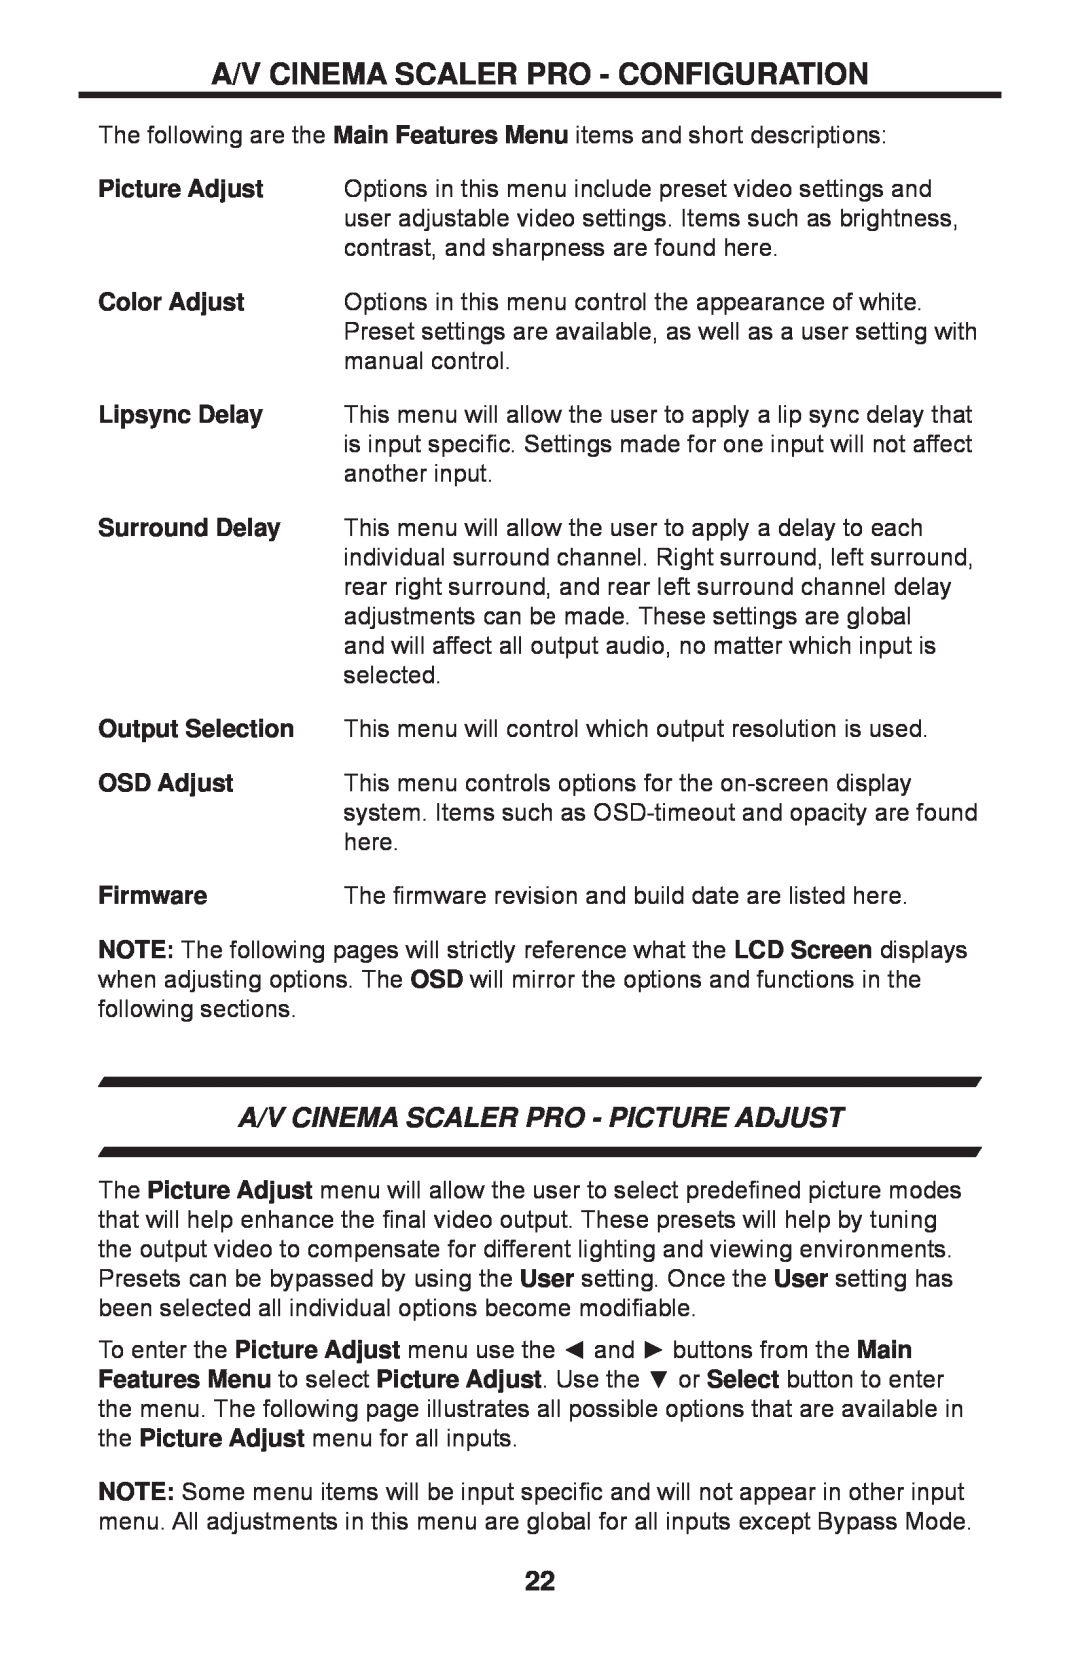 Gefen PRO I A/V Cinema Scaler Pro - Picture Adjust, Color Adjust, Surround Delay, Output Selection, OSD Adjust, Firmware 